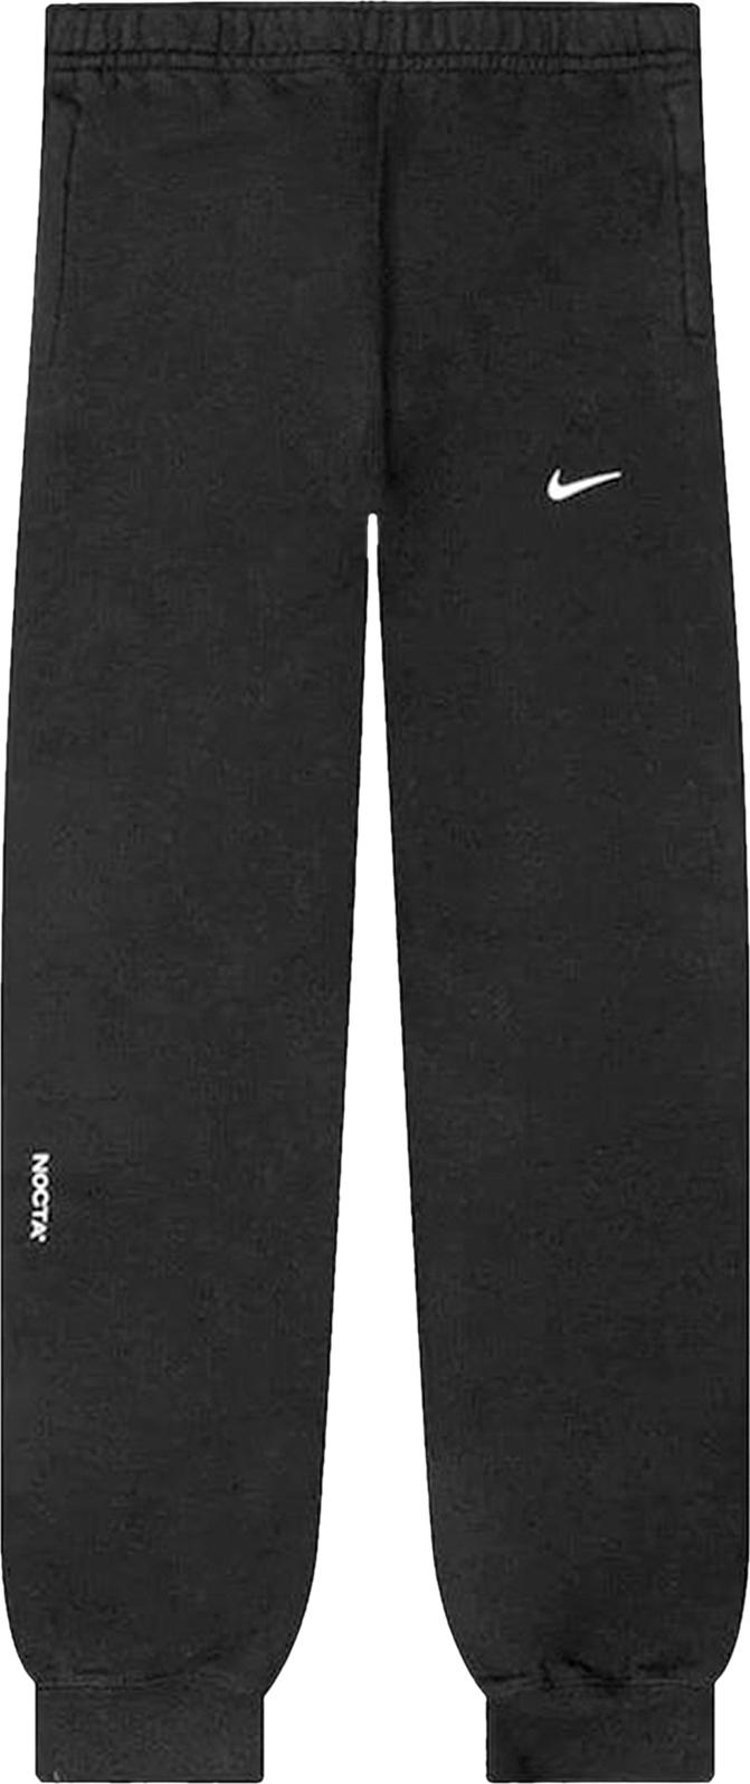 Брюки Nike NOCTA Fleece 'Black', черный